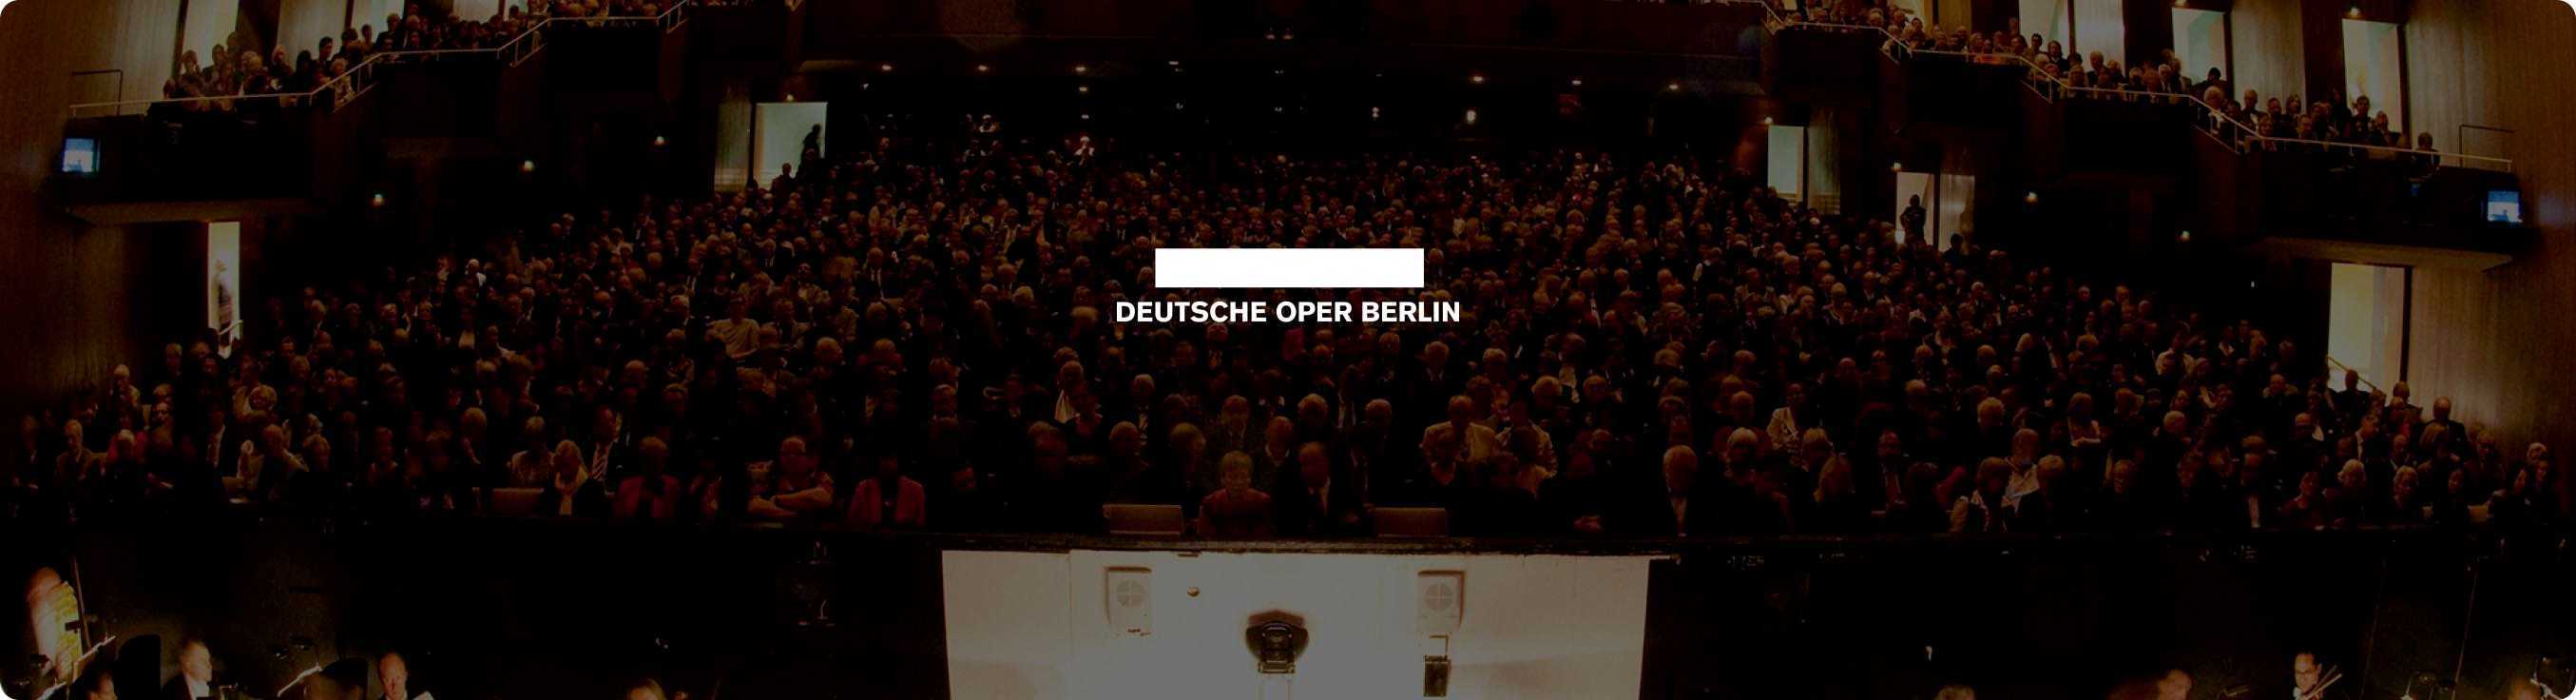 Deutsche Oper Berlin - Rangfoyer